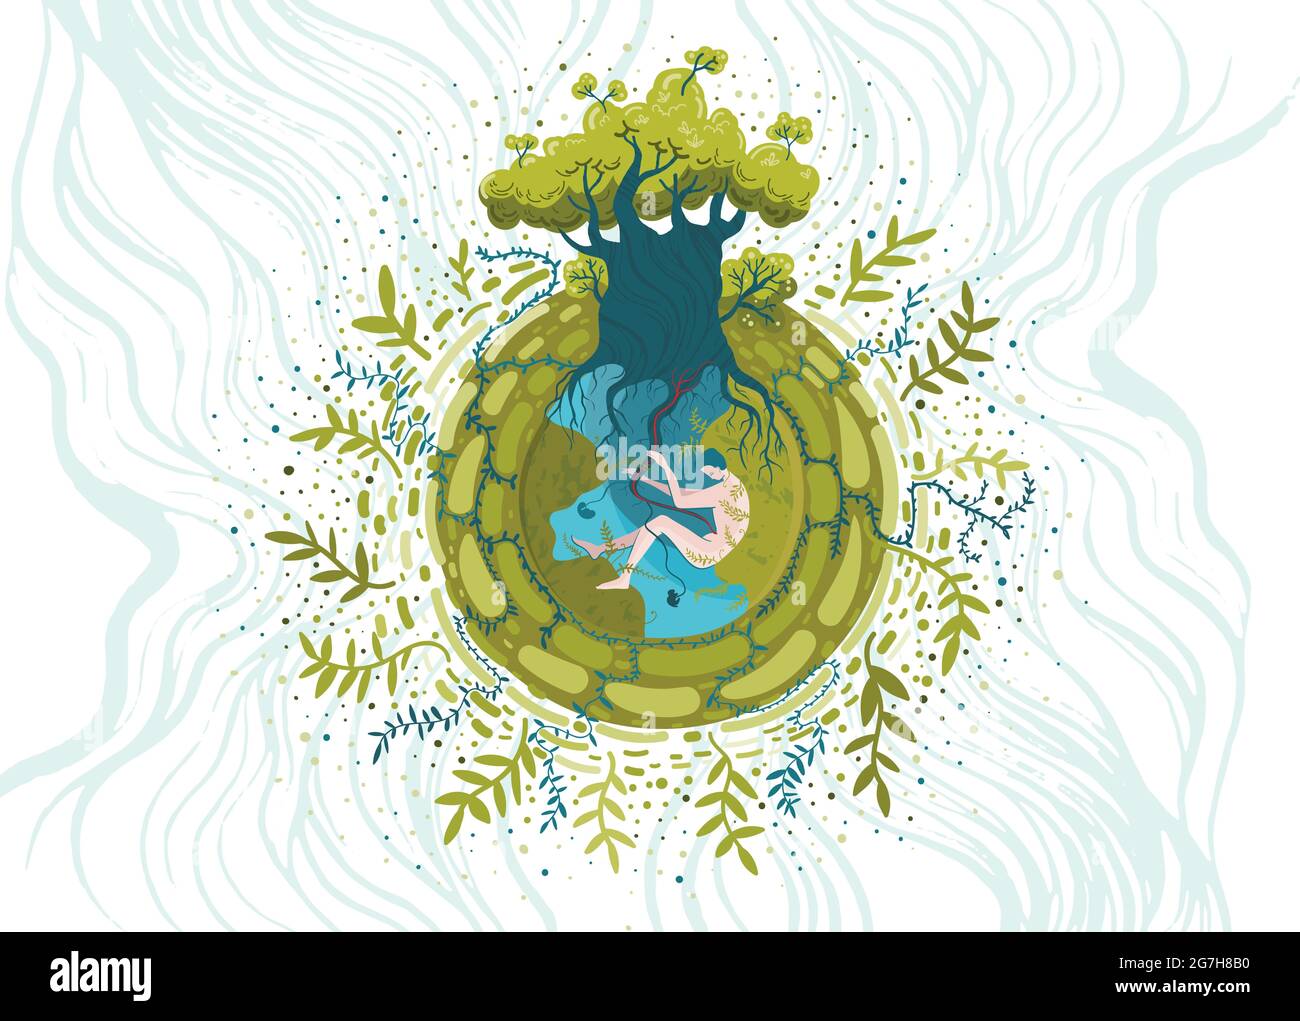 Illustrazione vettoriale concettuale sul tema ecologico e della protezione della natura. Illustrazione Vettoriale